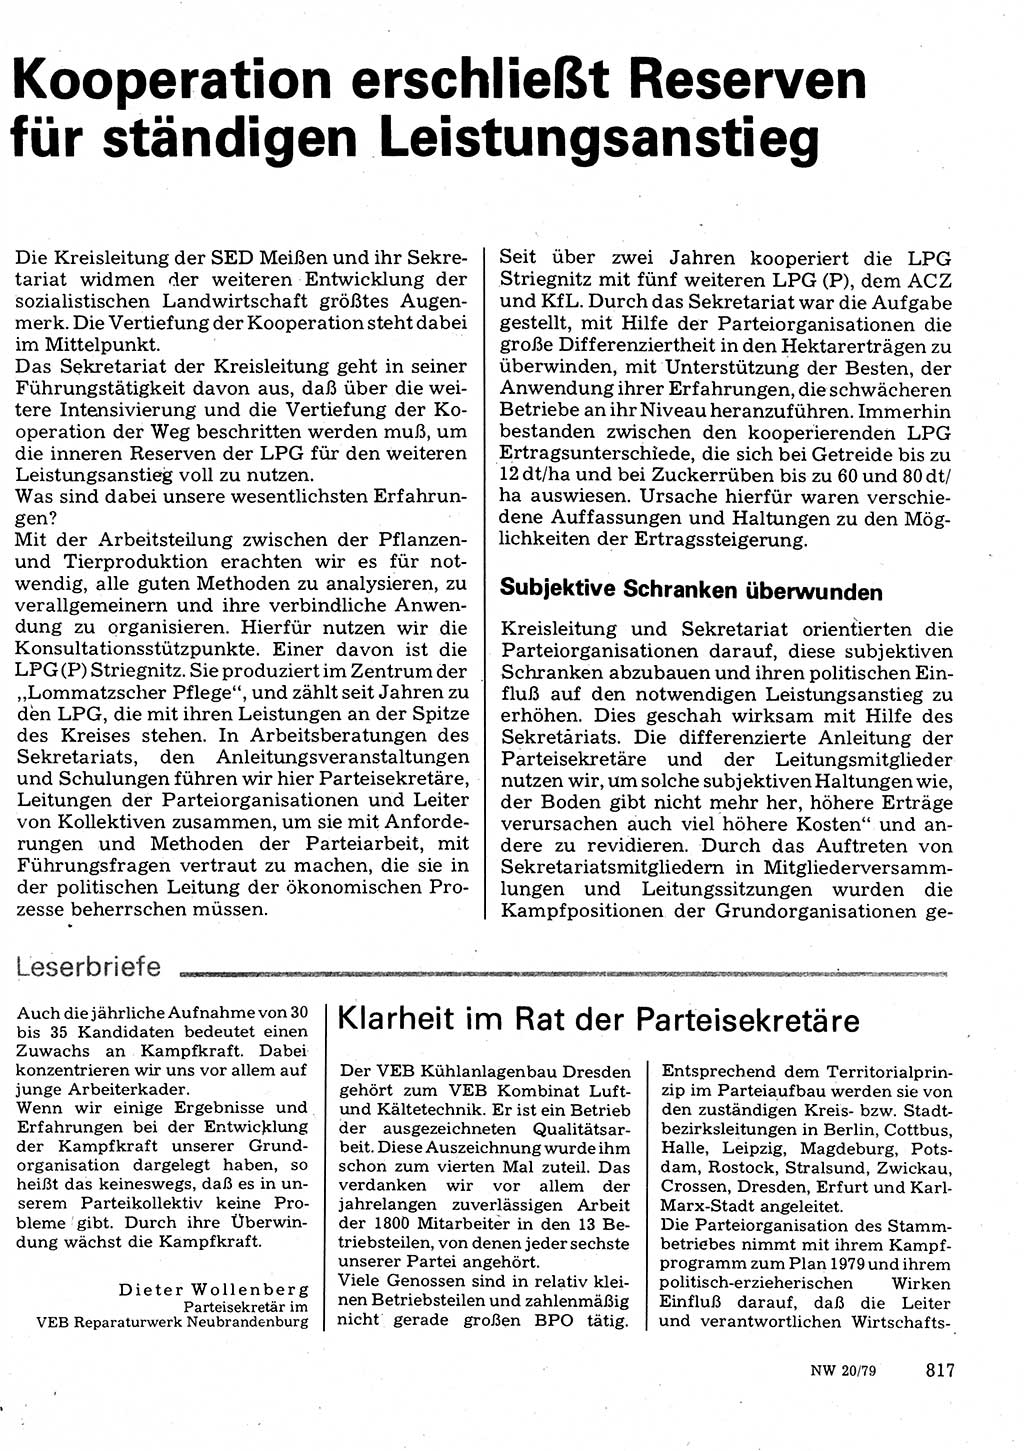 Neuer Weg (NW), Organ des Zentralkomitees (ZK) der SED (Sozialistische Einheitspartei Deutschlands) für Fragen des Parteilebens, 34. Jahrgang [Deutsche Demokratische Republik (DDR)] 1979, Seite 817 (NW ZK SED DDR 1979, S. 817)